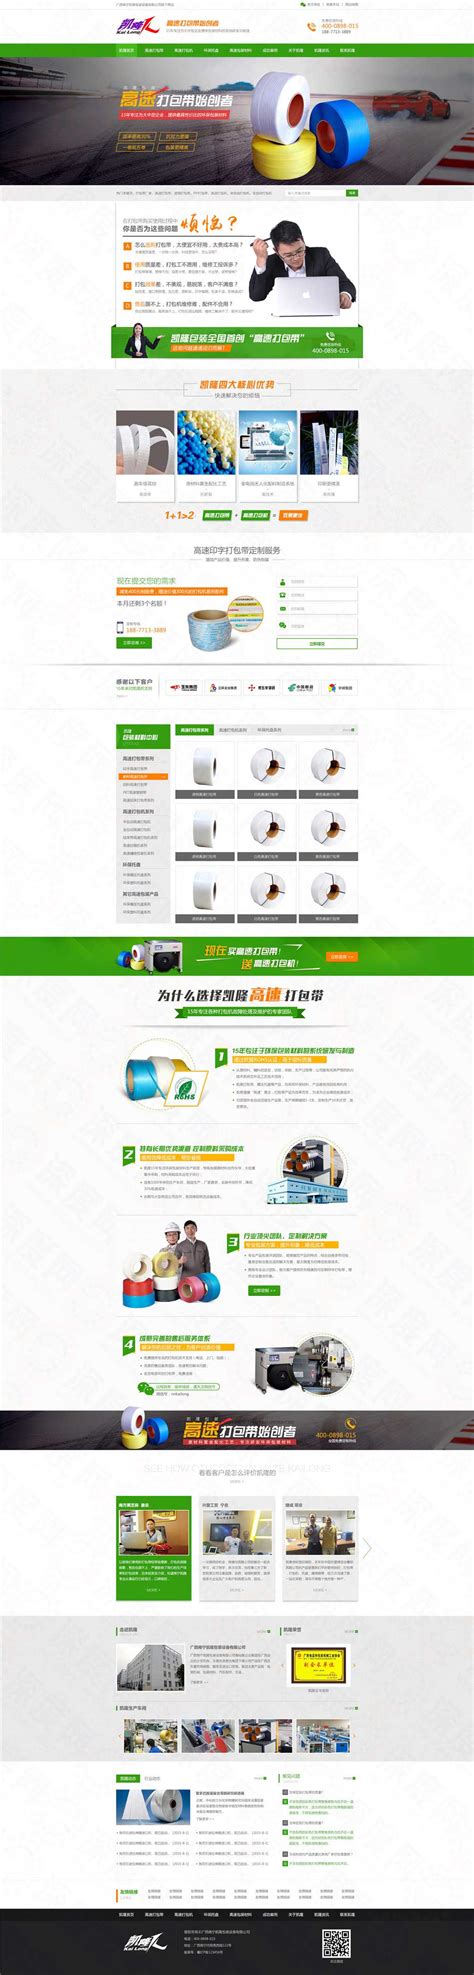 南宁凯隆包装设备营销型网站建设案例|印刷/包装/广告|深度网